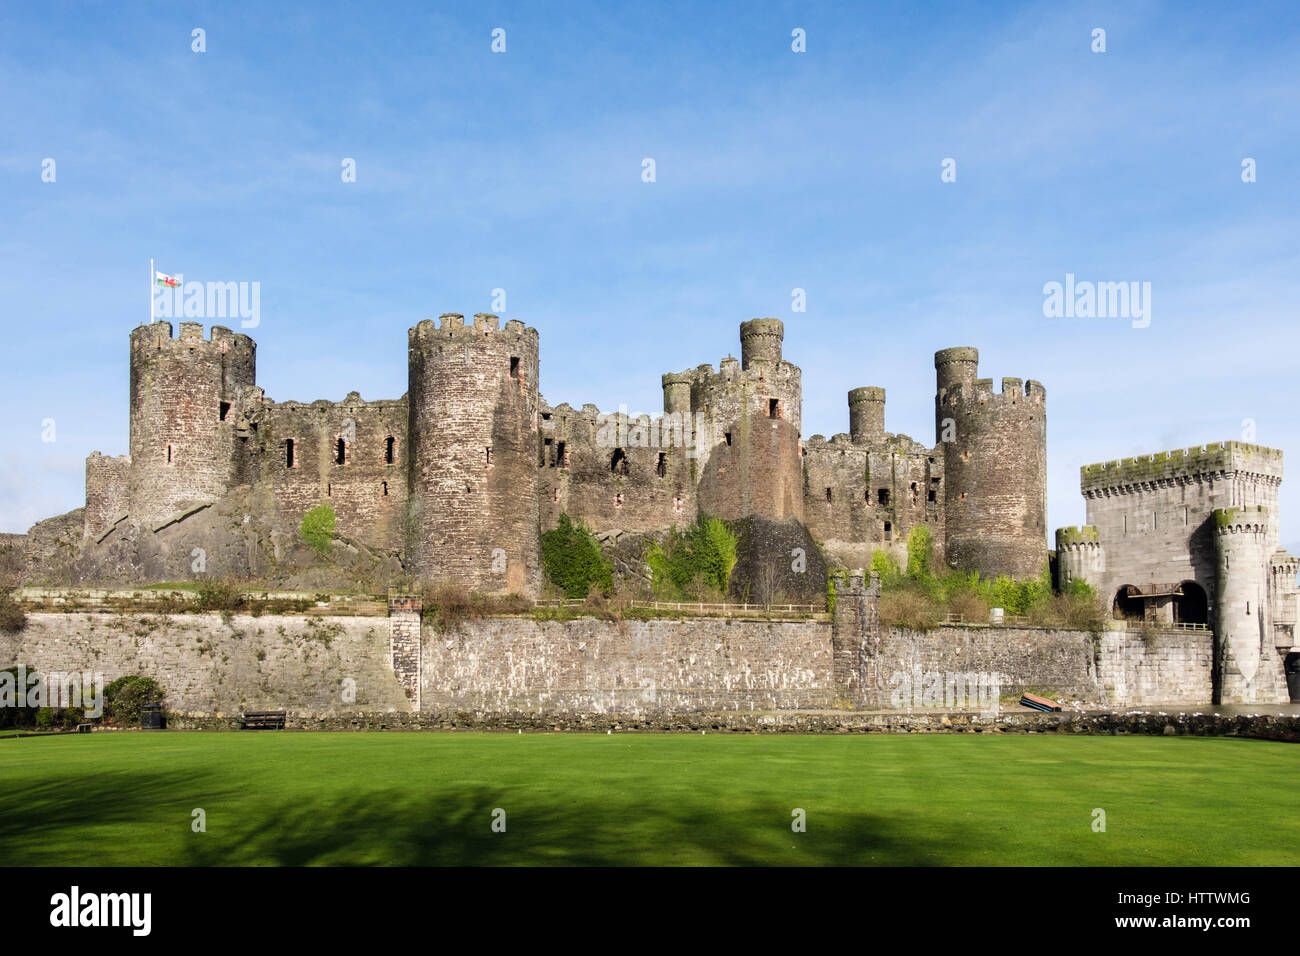 Conwy Castle Zinnen auf Türme und Mauern mit walisische Flagge von außen gesehen. Conwy, Wales, UK, Großbritannien, Europa Stockfoto